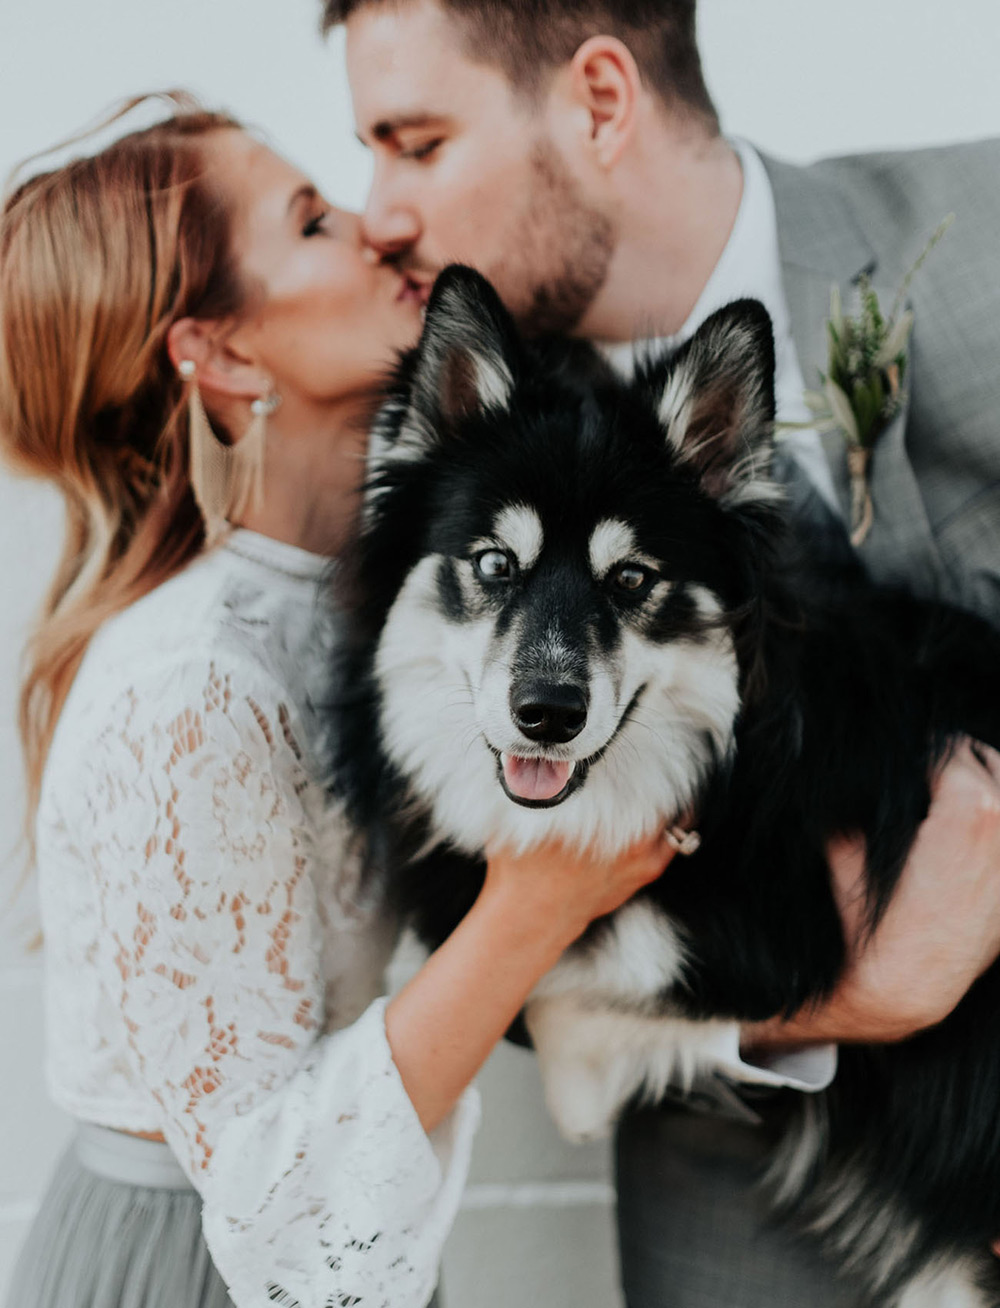 Pets no Casamento | Como incluir o cachorro no casamento | Noiva Ansiosa